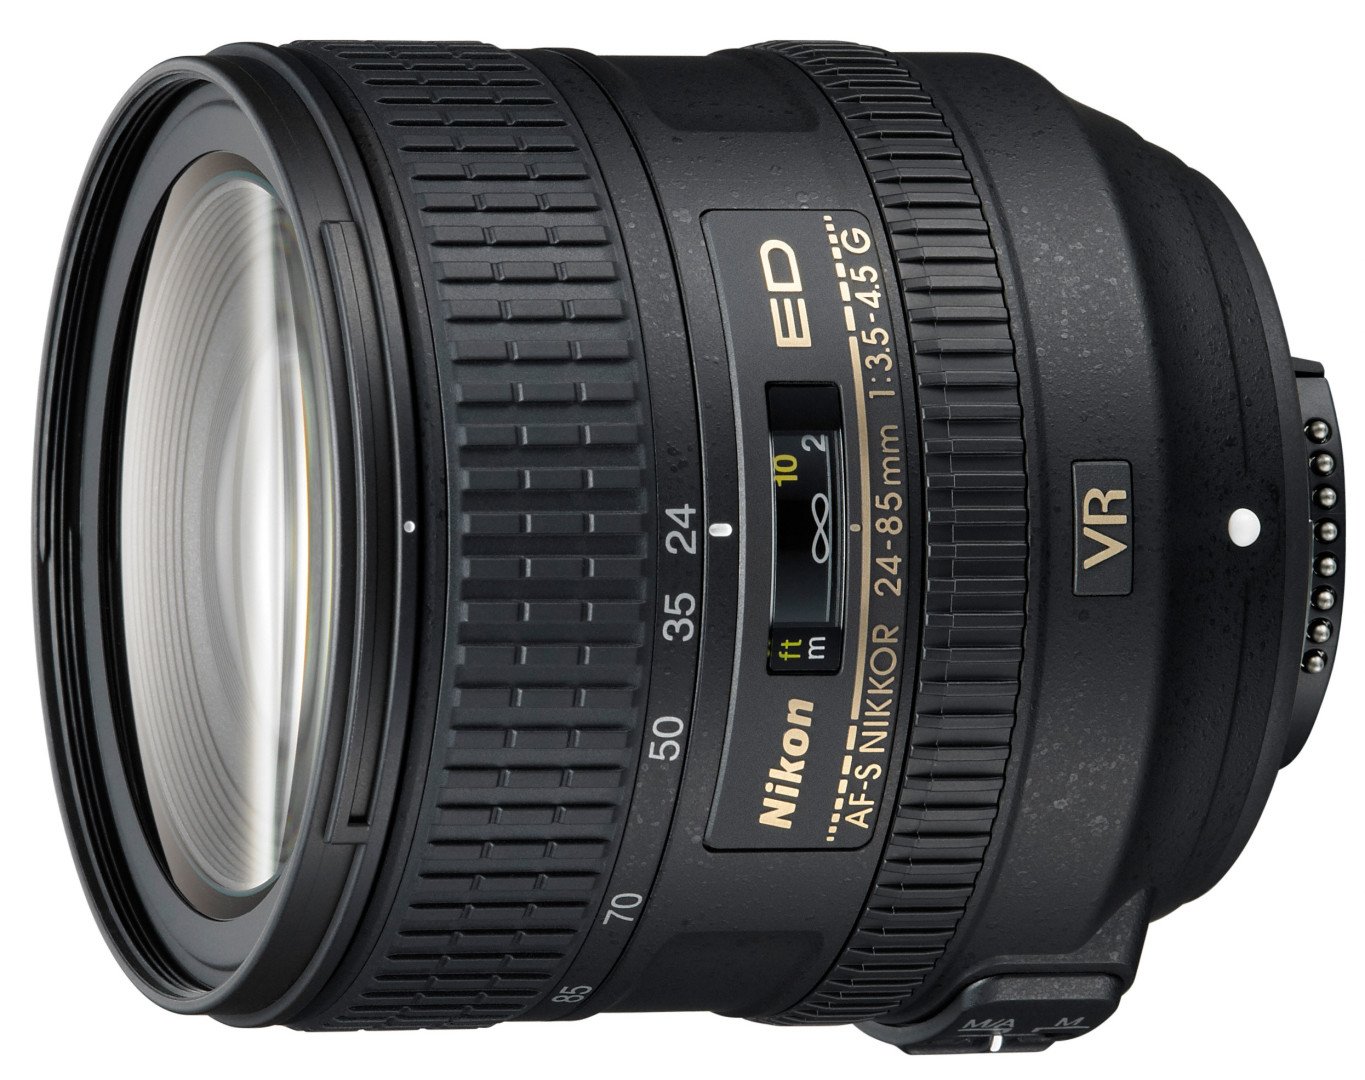 Nikon 24-85mm VR review | Cameralabs